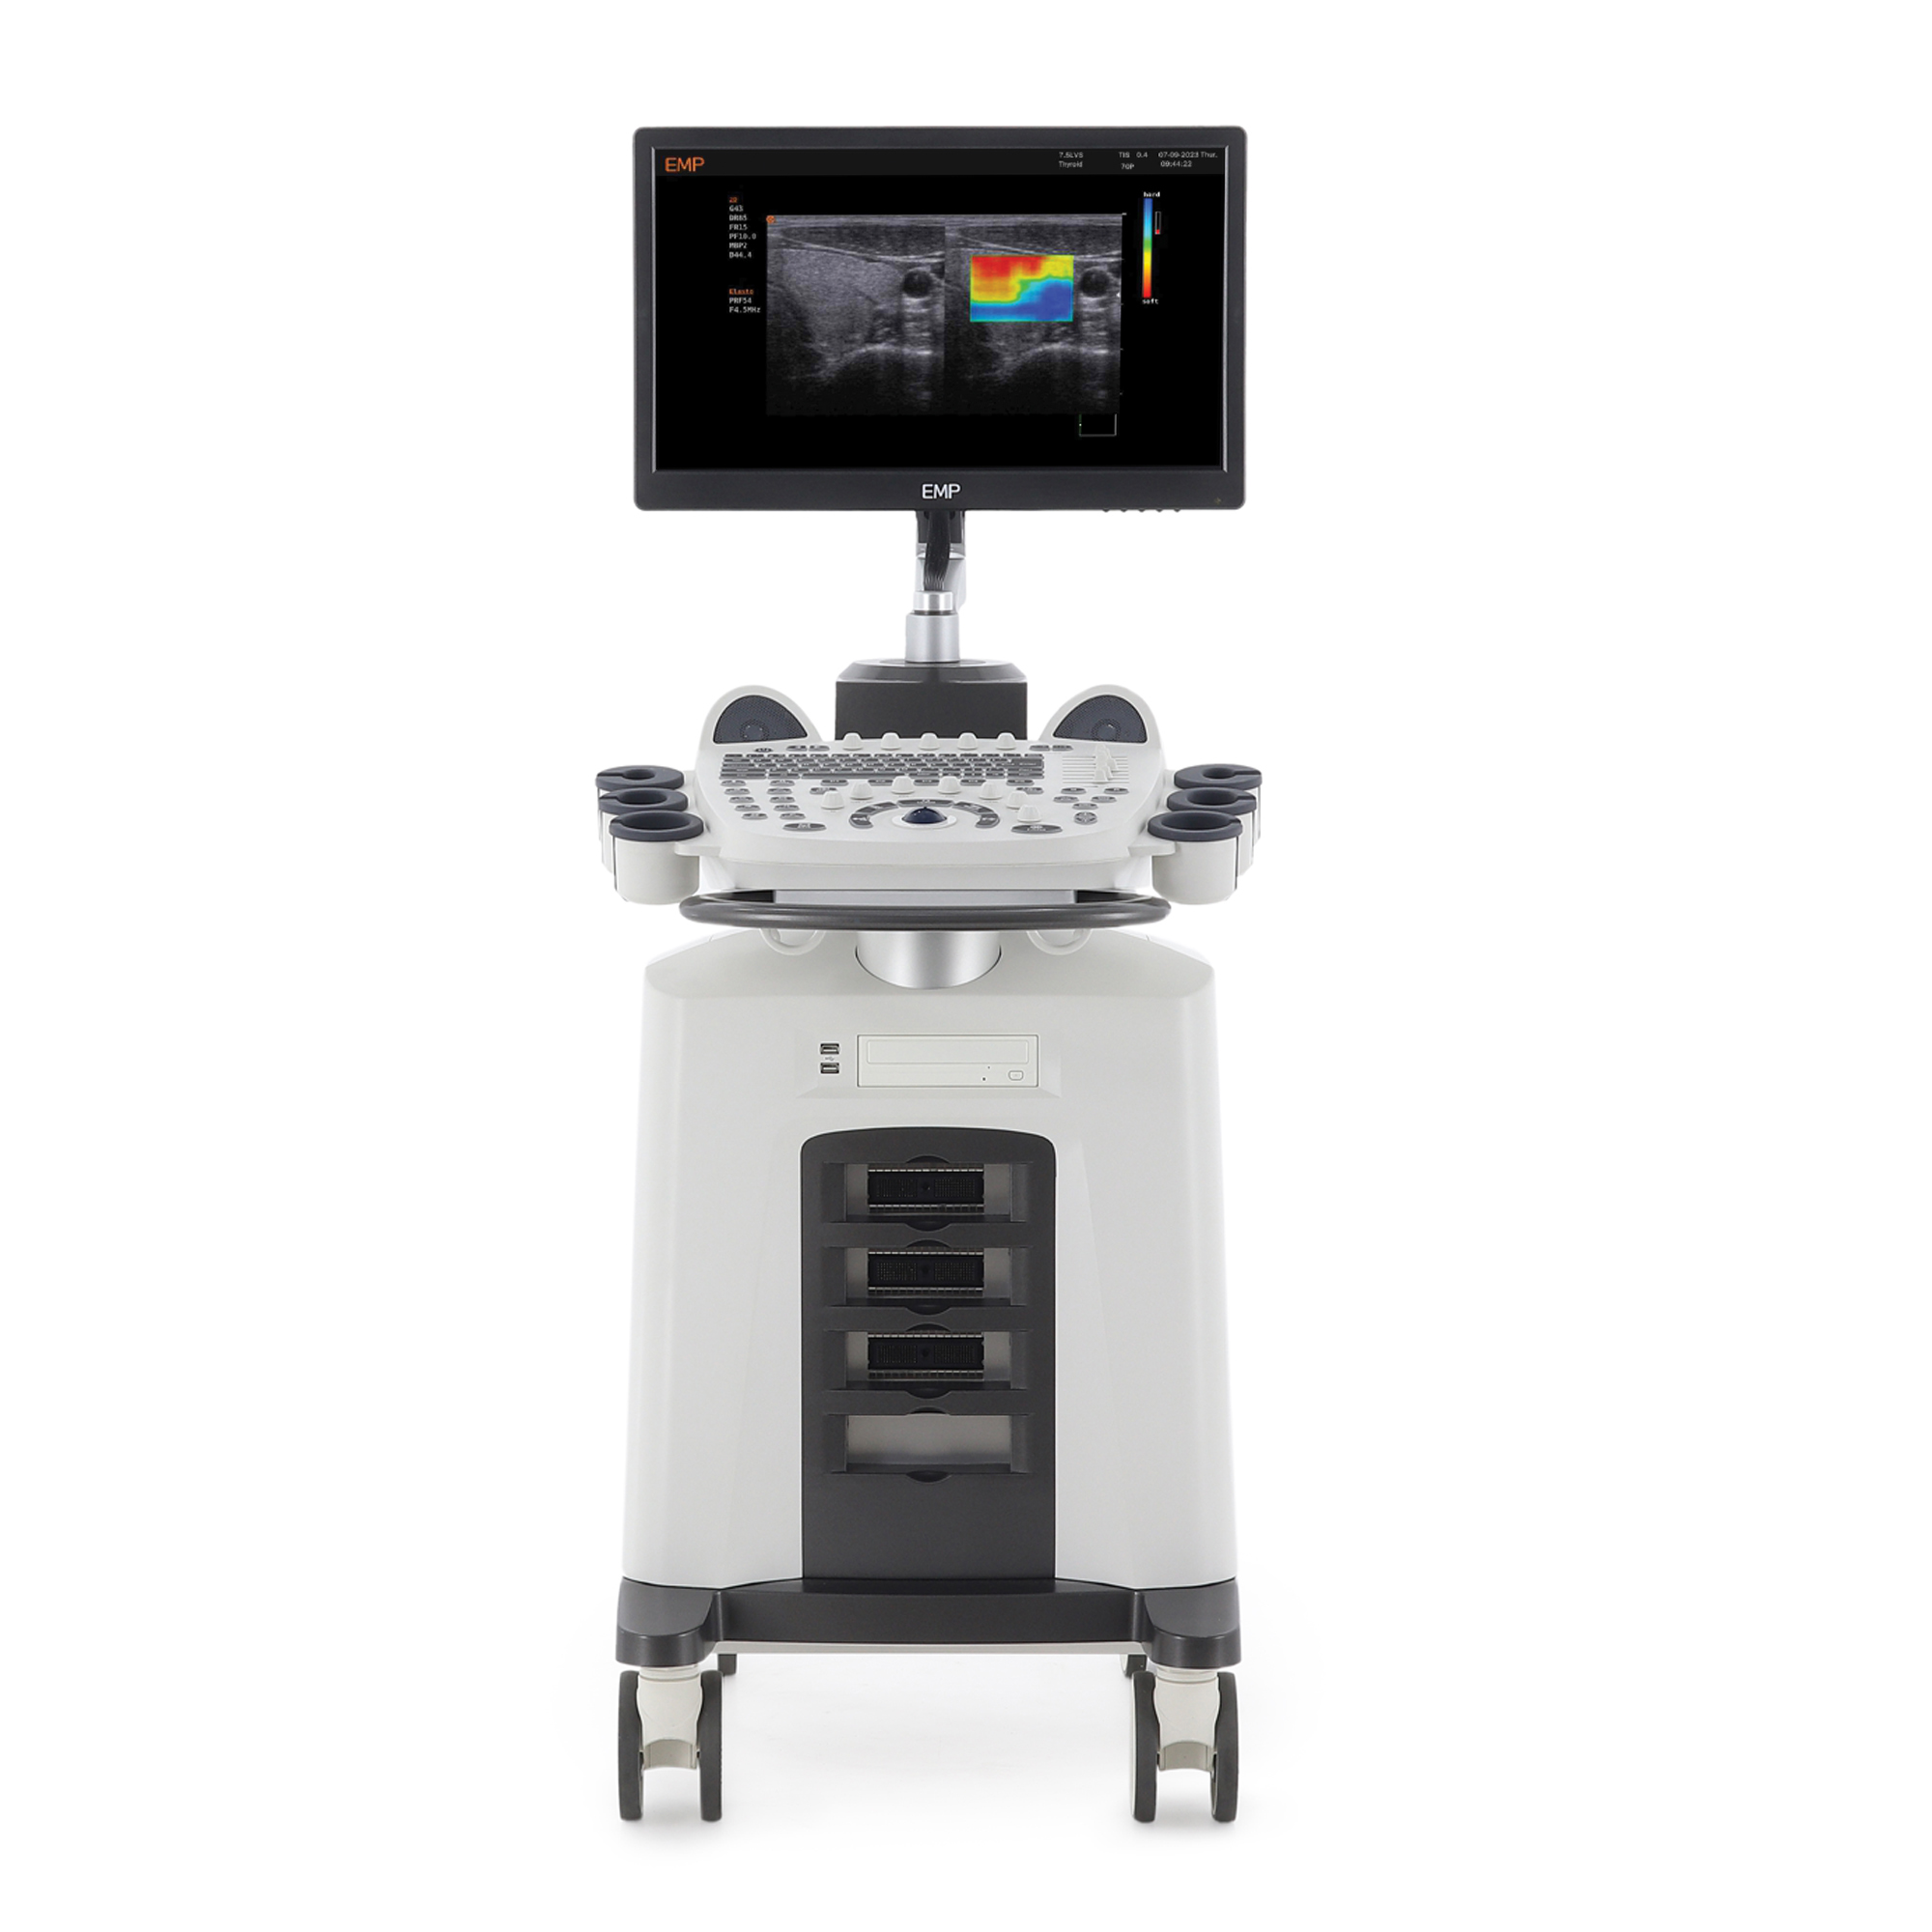 Узи сканер Med-Mos ЕМР3000 с 4-мя датчиками